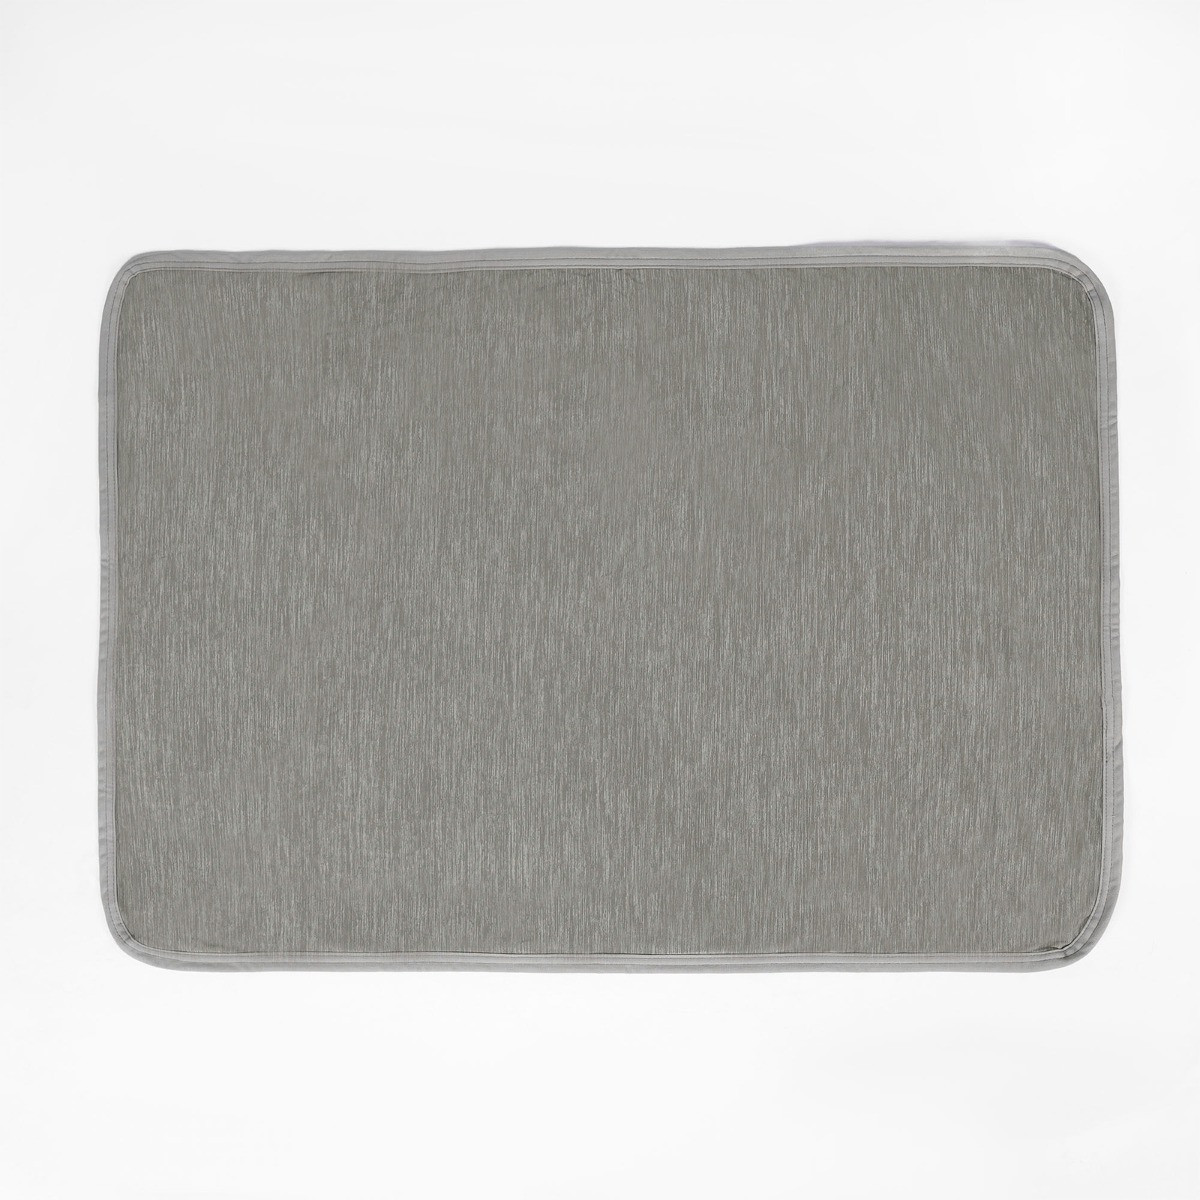 OHS Pet Cooling Blanket, Grey - 100 x 70cm>